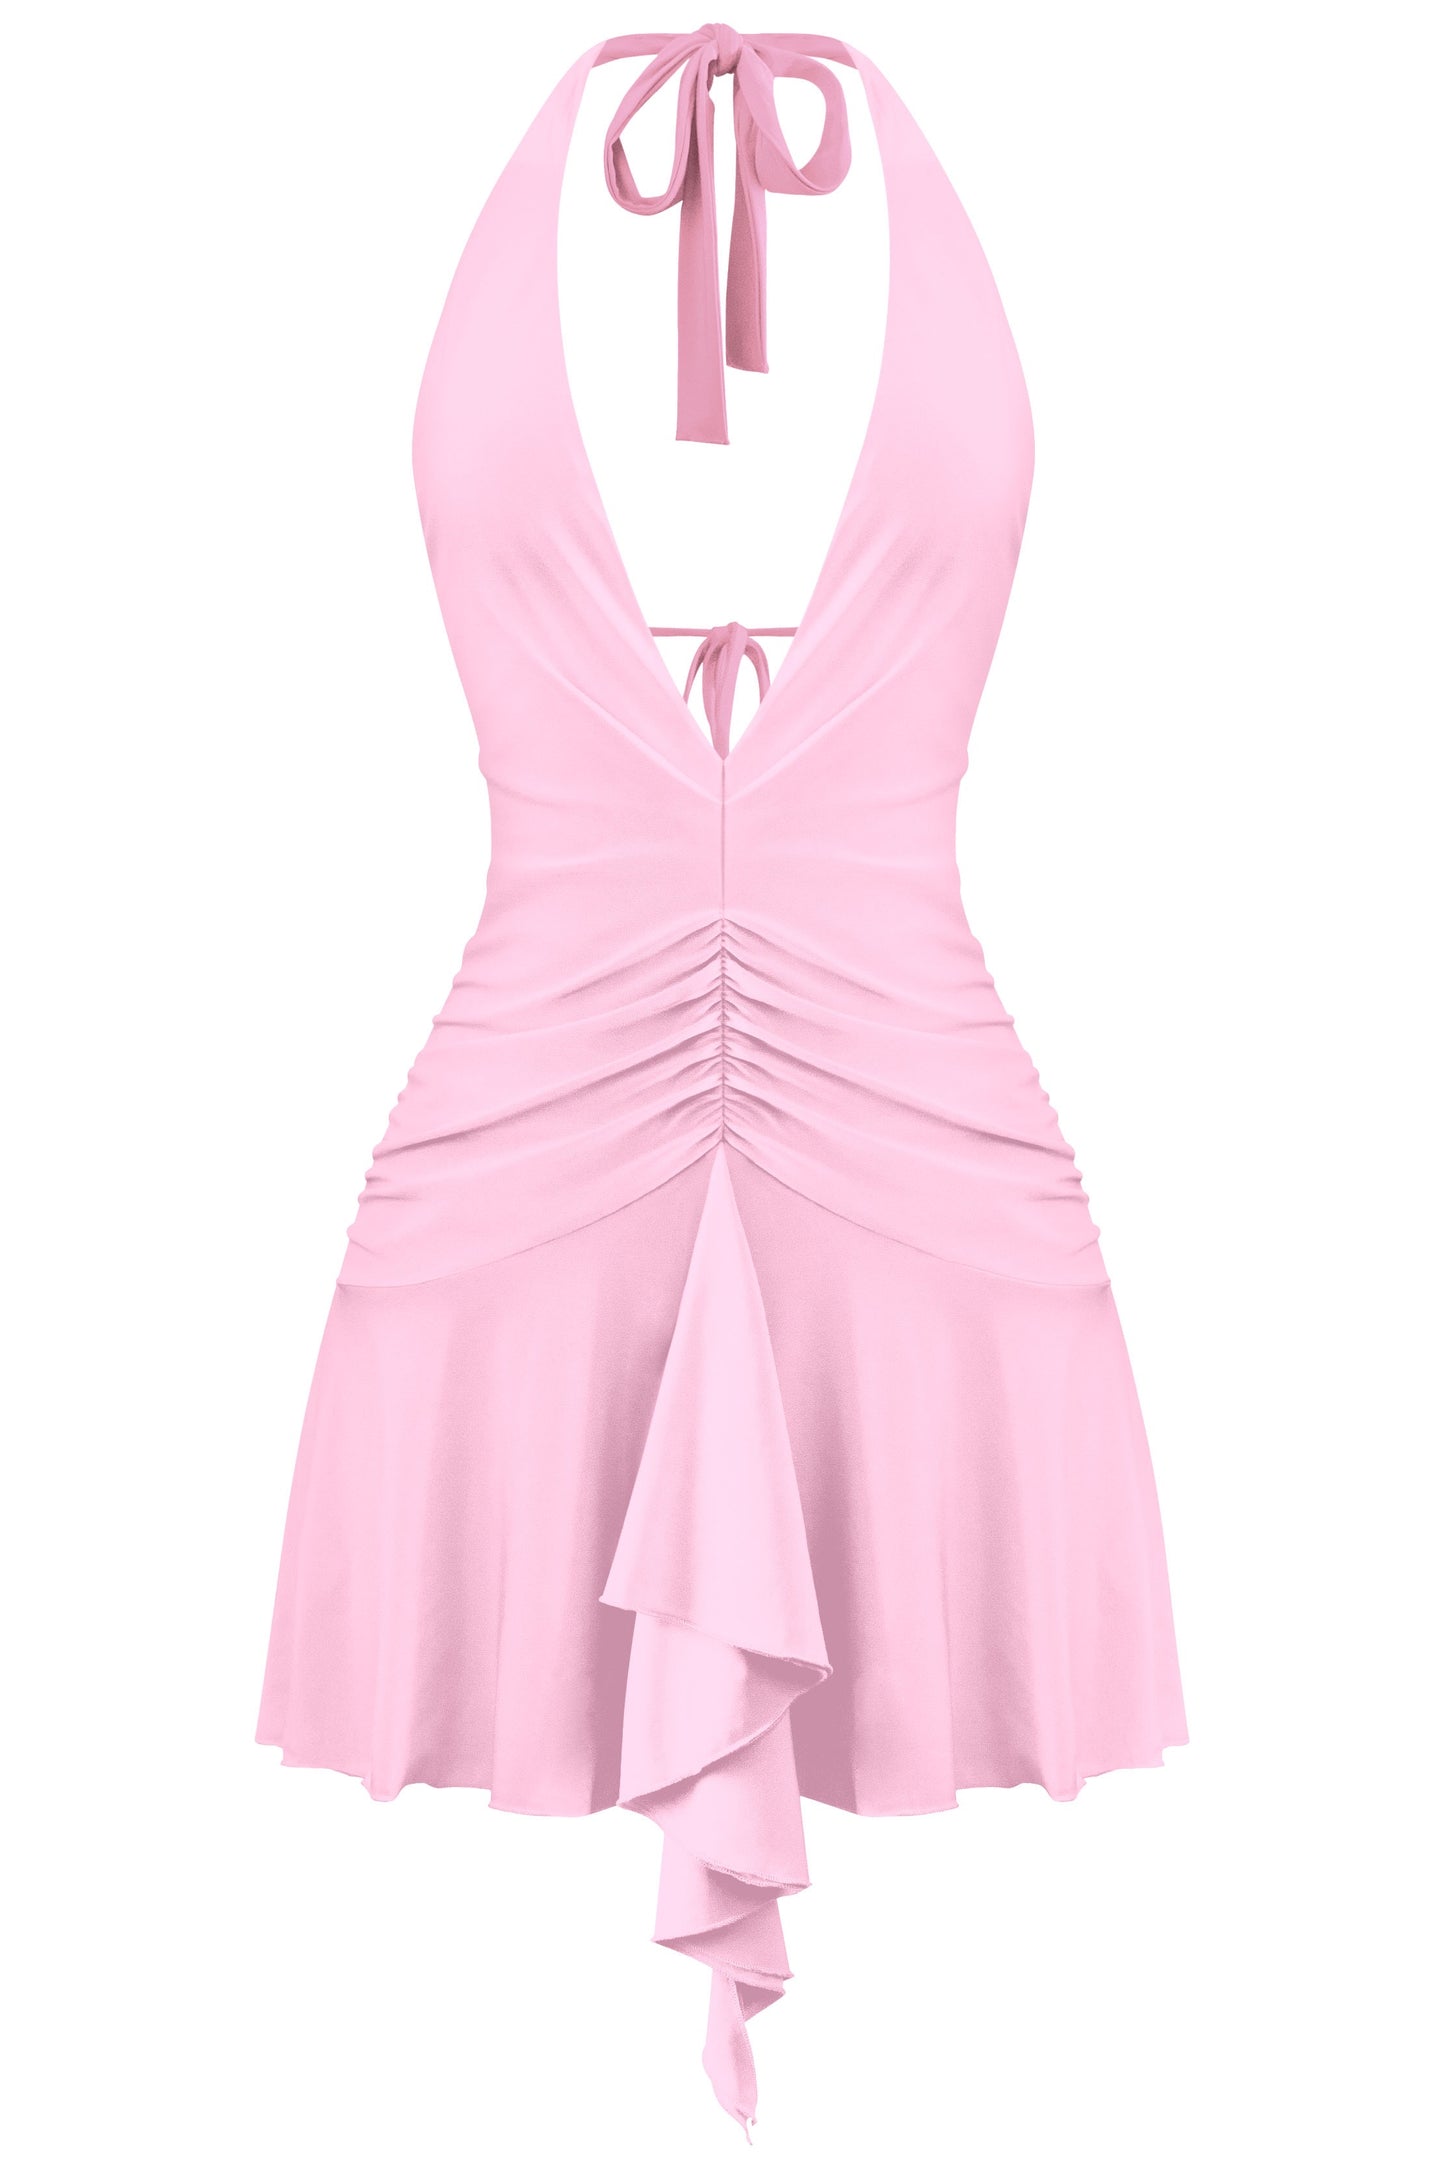 Kimberly open back dress - pink